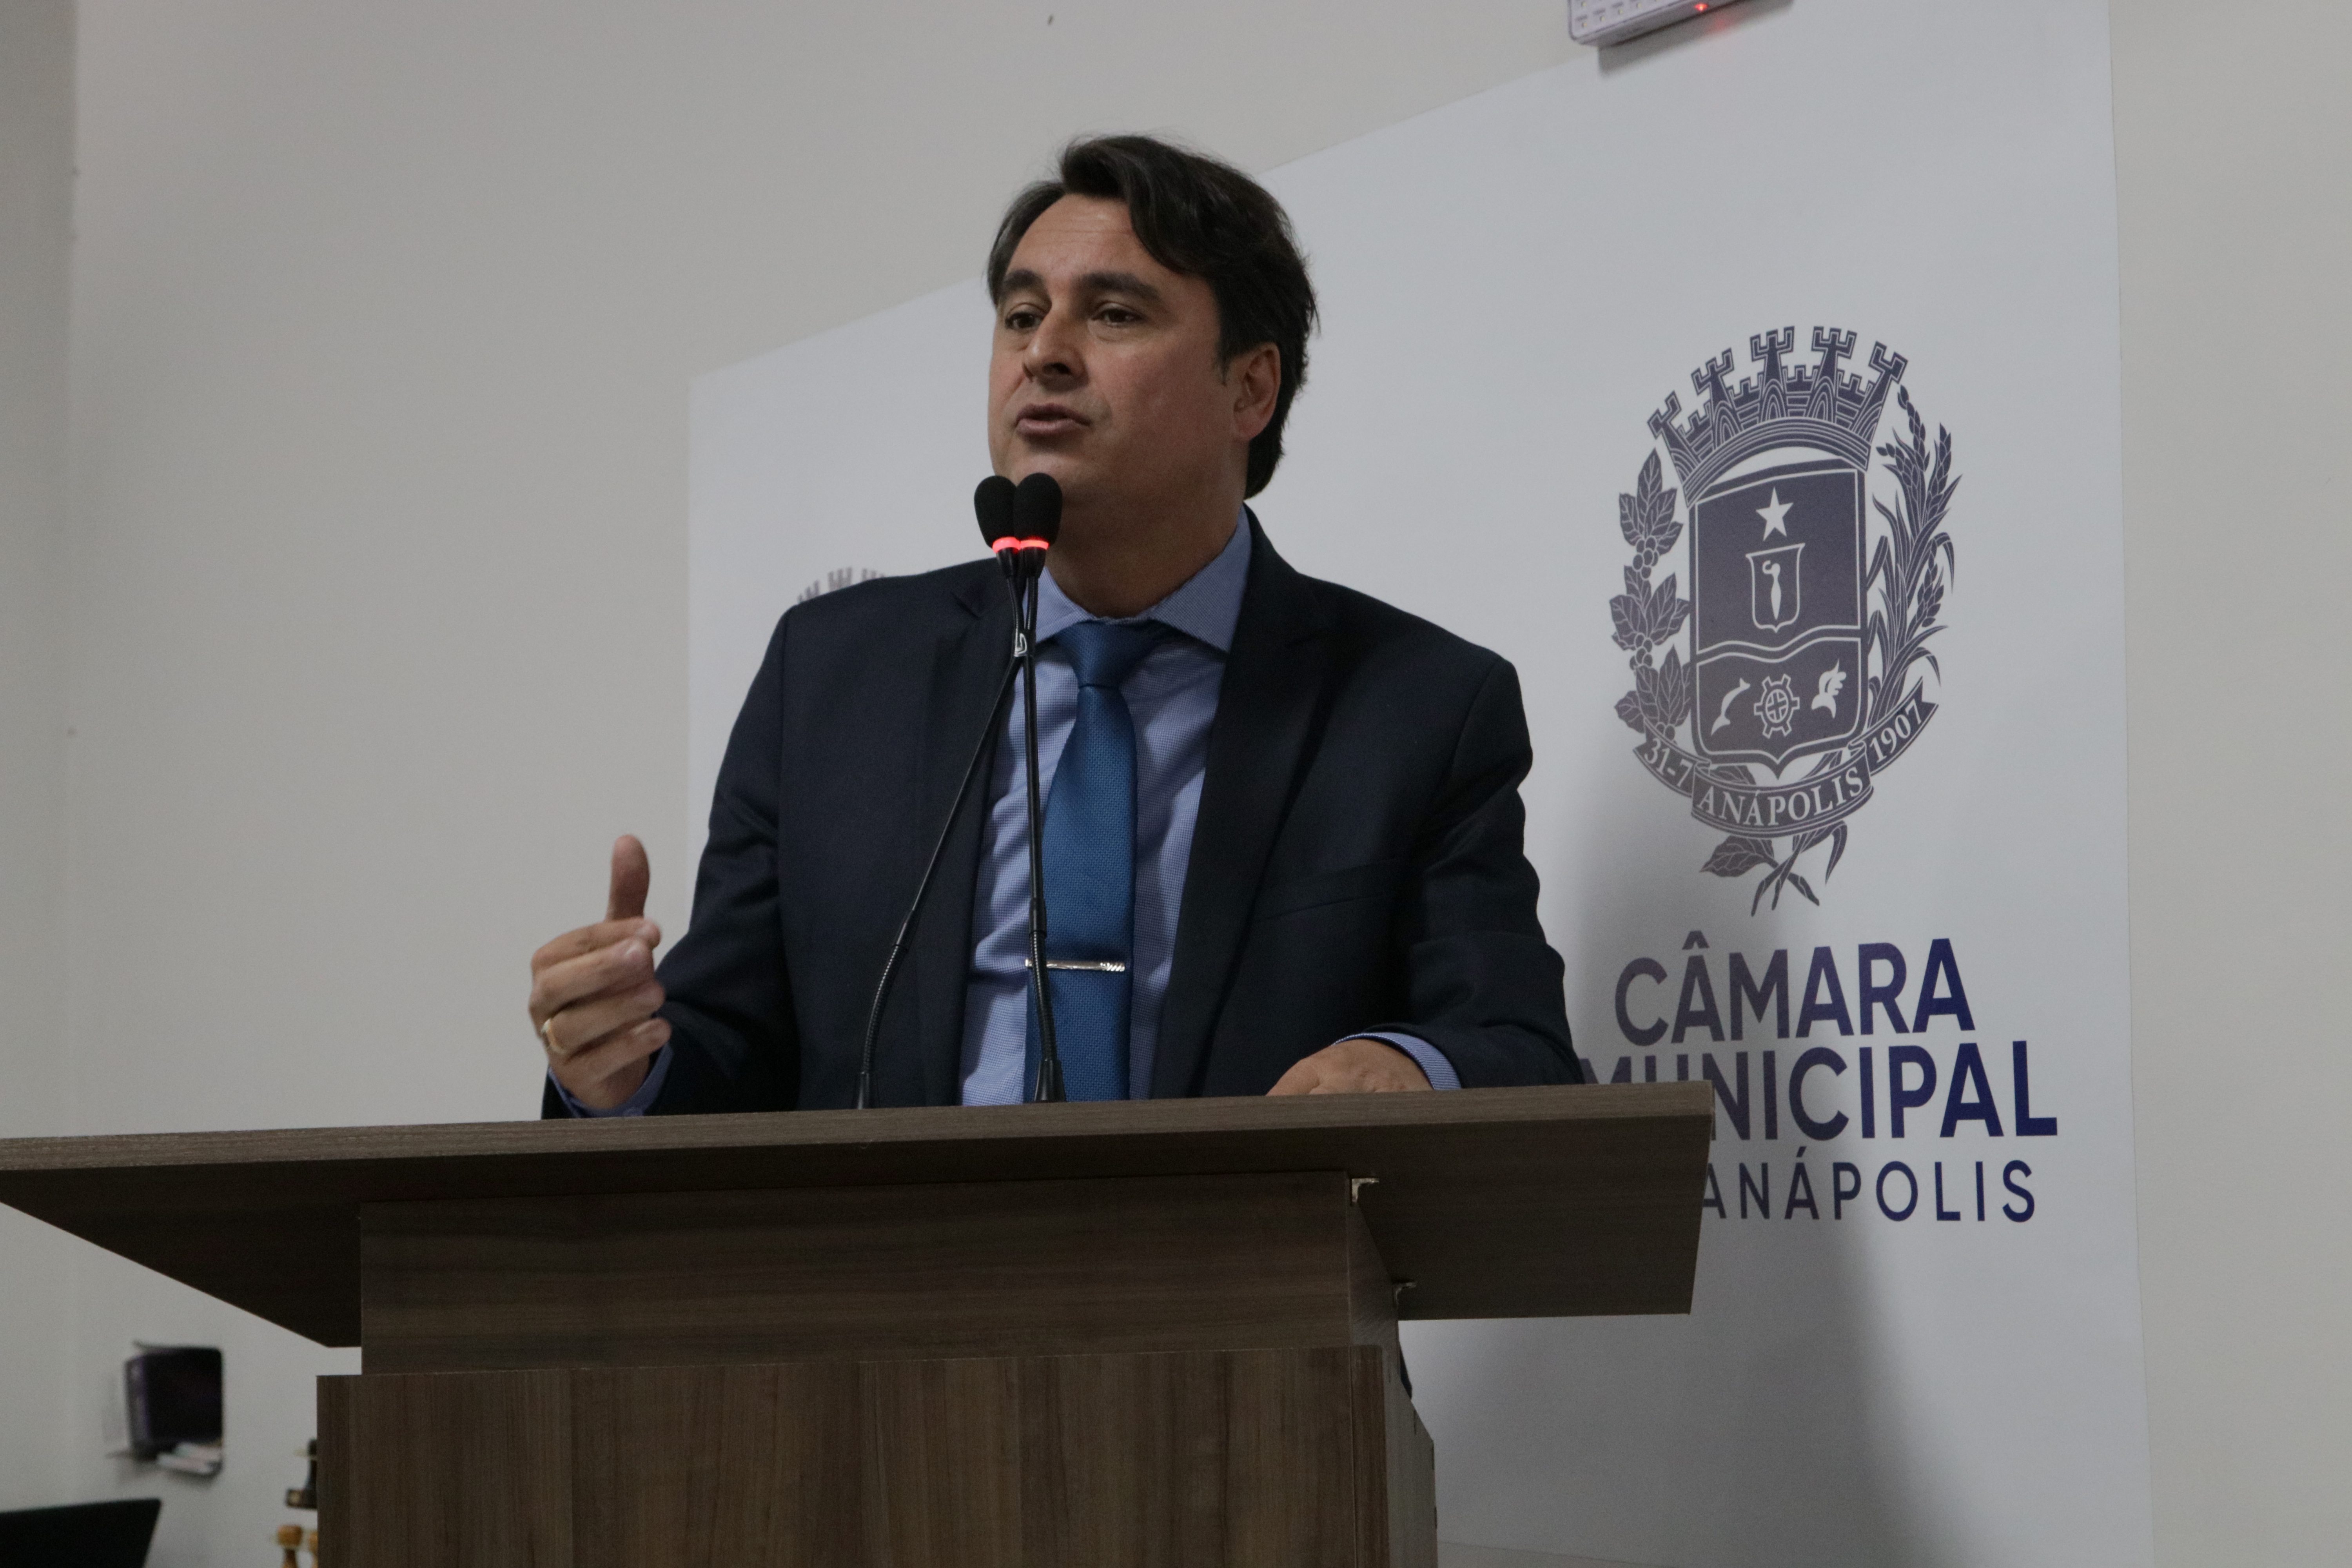 Jean Carlos pede aumento do prazo para regularização de imóveis em Anápolis